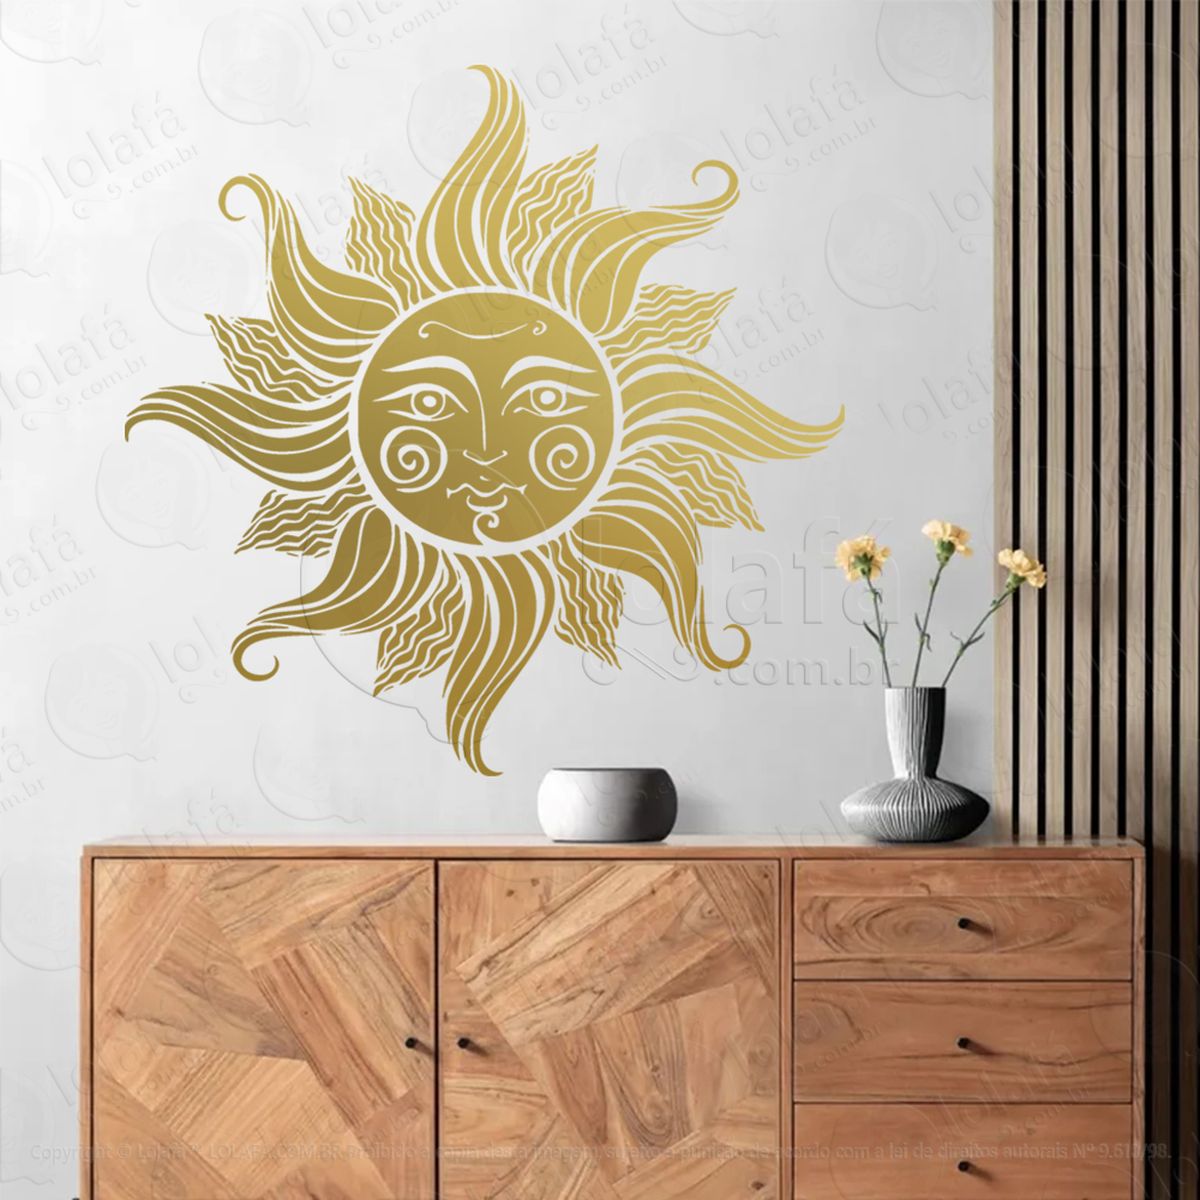 face do sol face sun adesivo de parede decorativo para casa, sala, quarto, vidro e altar ocultista - mod:251